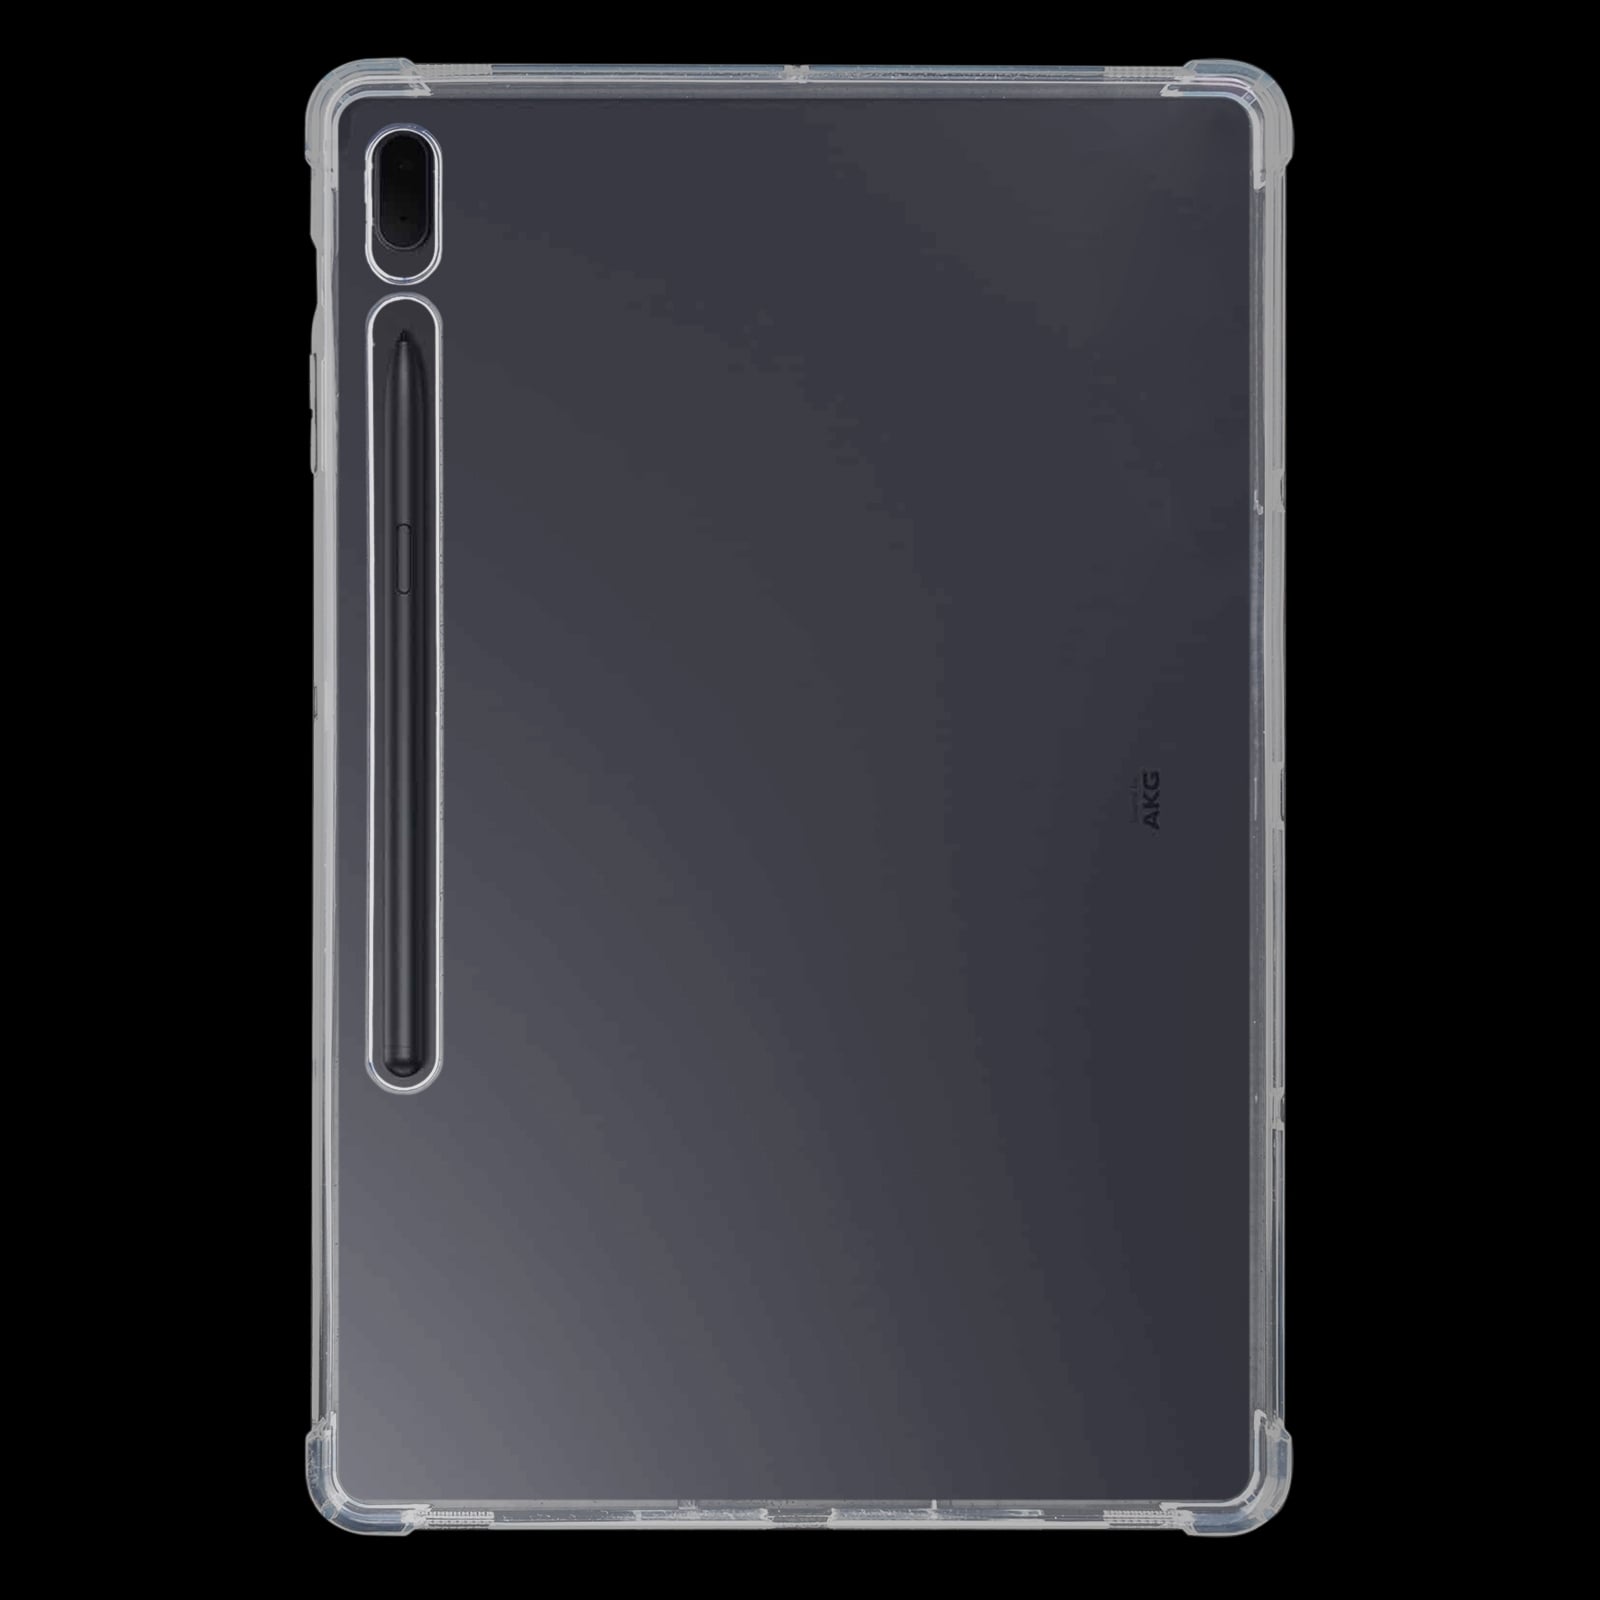 Stødsikkert beskyttelsesfoderal til Samsung Galaxy Tab S7 T870/T875 - Gennemsigtig